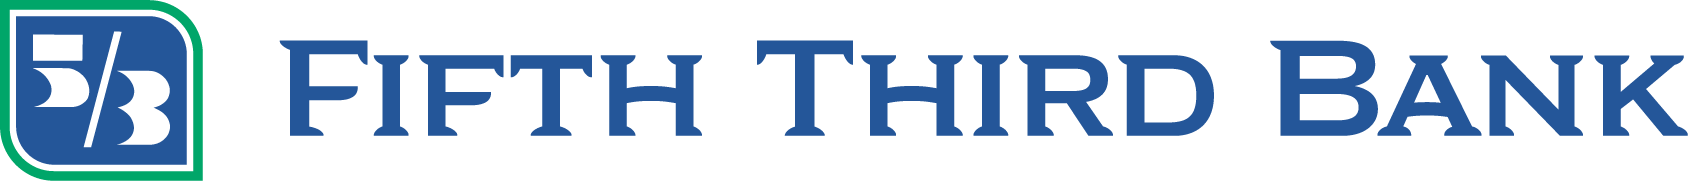 Fifth Third Bank, N.A. logo